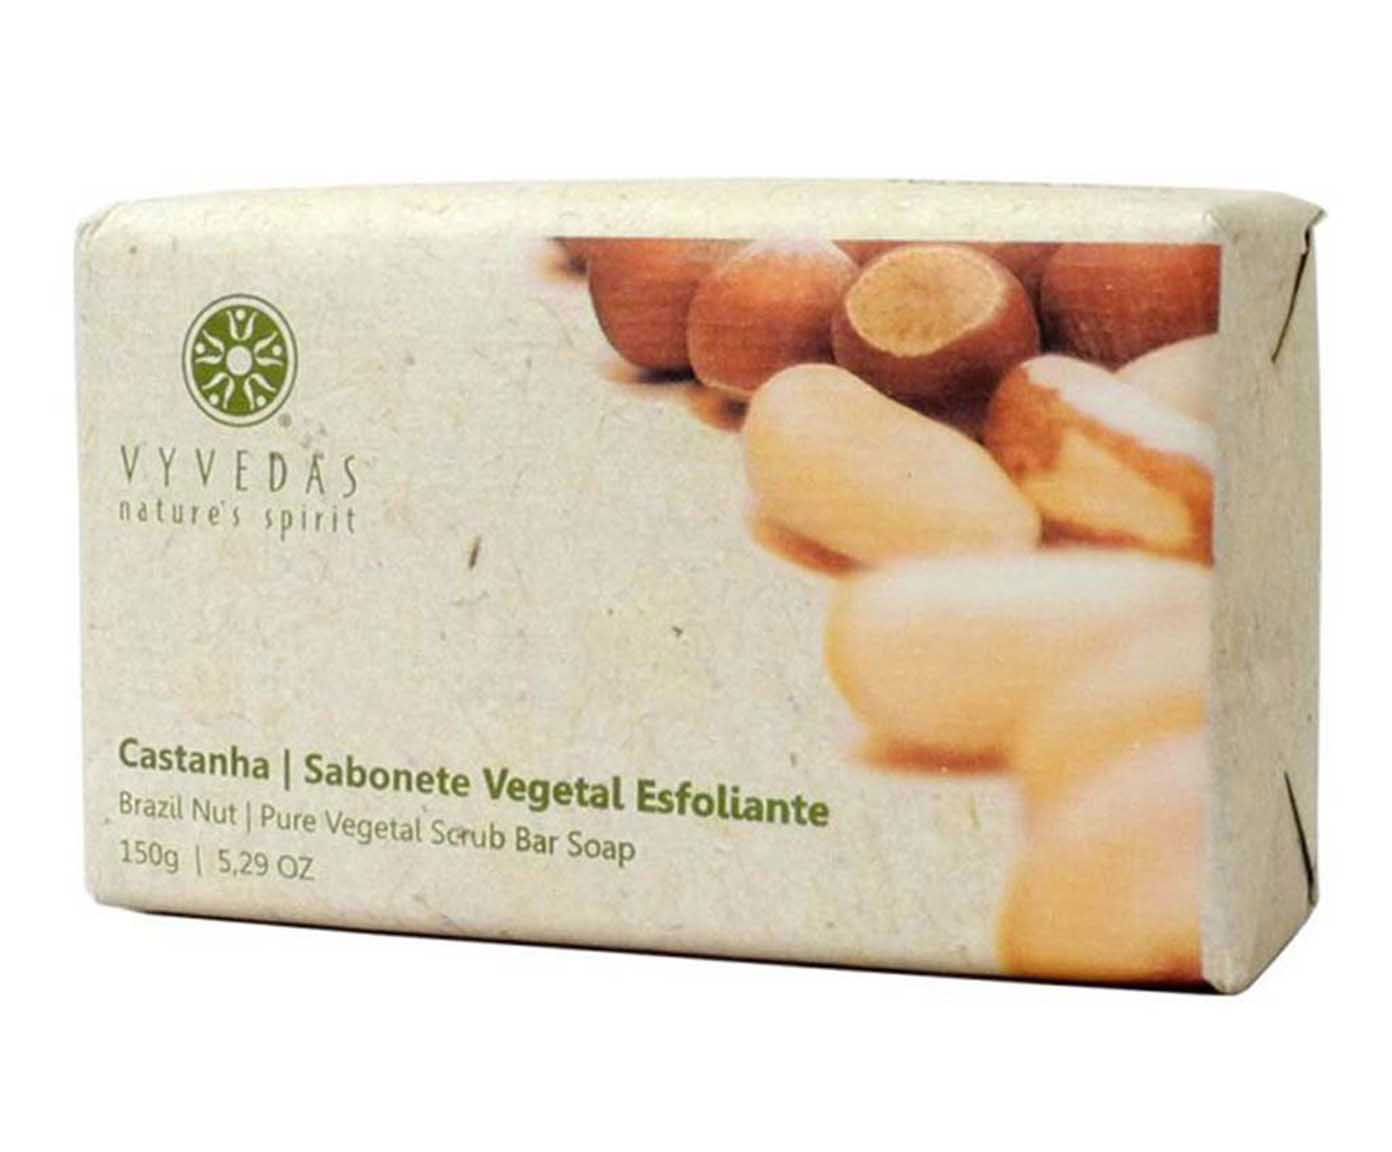 Sabonete esfoliante em barra vyvedas castanha - 150g | Westwing.com.br